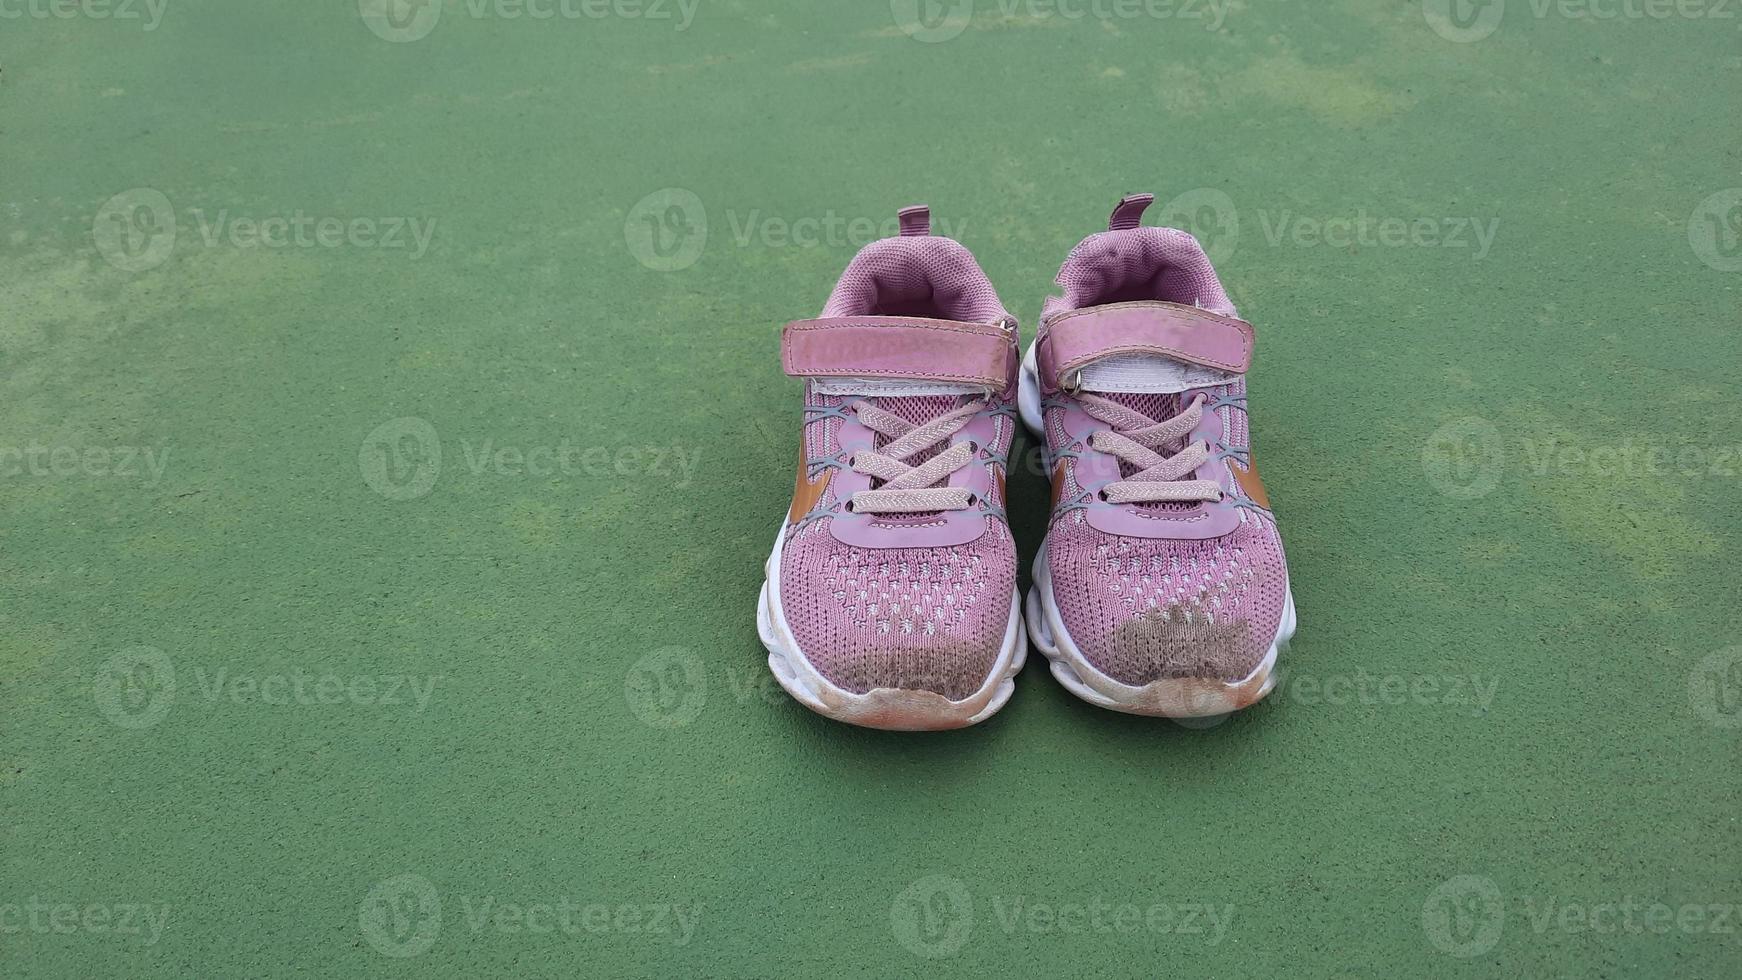 petite chaussure rose après l'entraînement. gros plan de chaussures sales pour enfants sur le terrain. baskets enfants boueux photo